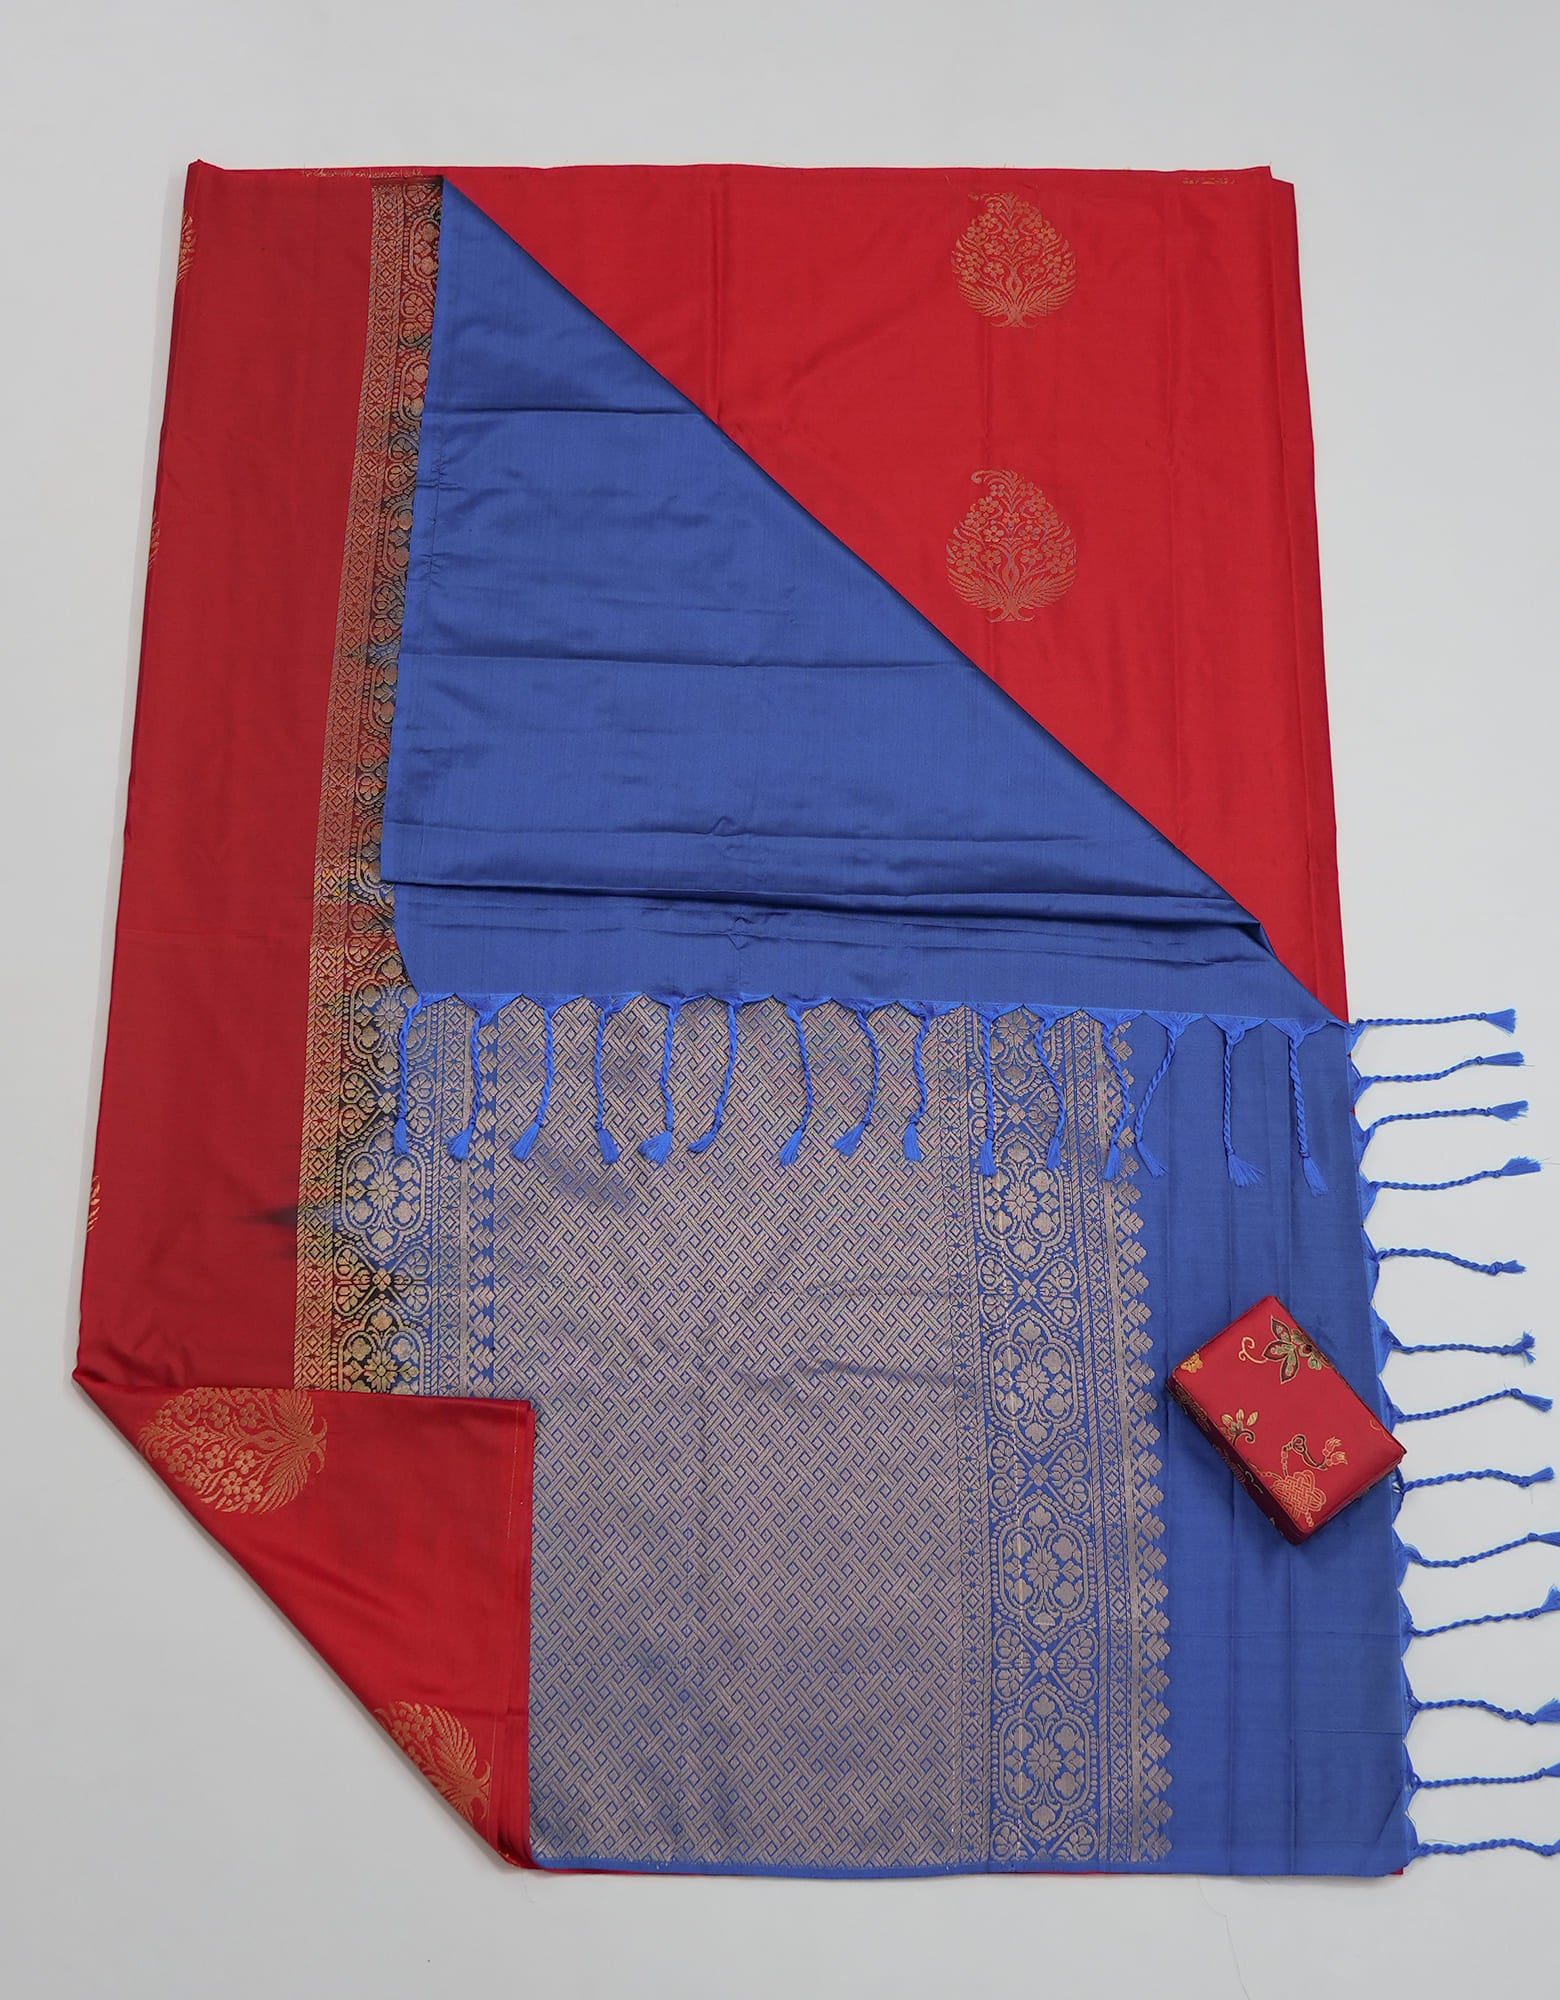 Classic Red Kanchipuram Borderless Silk Saree